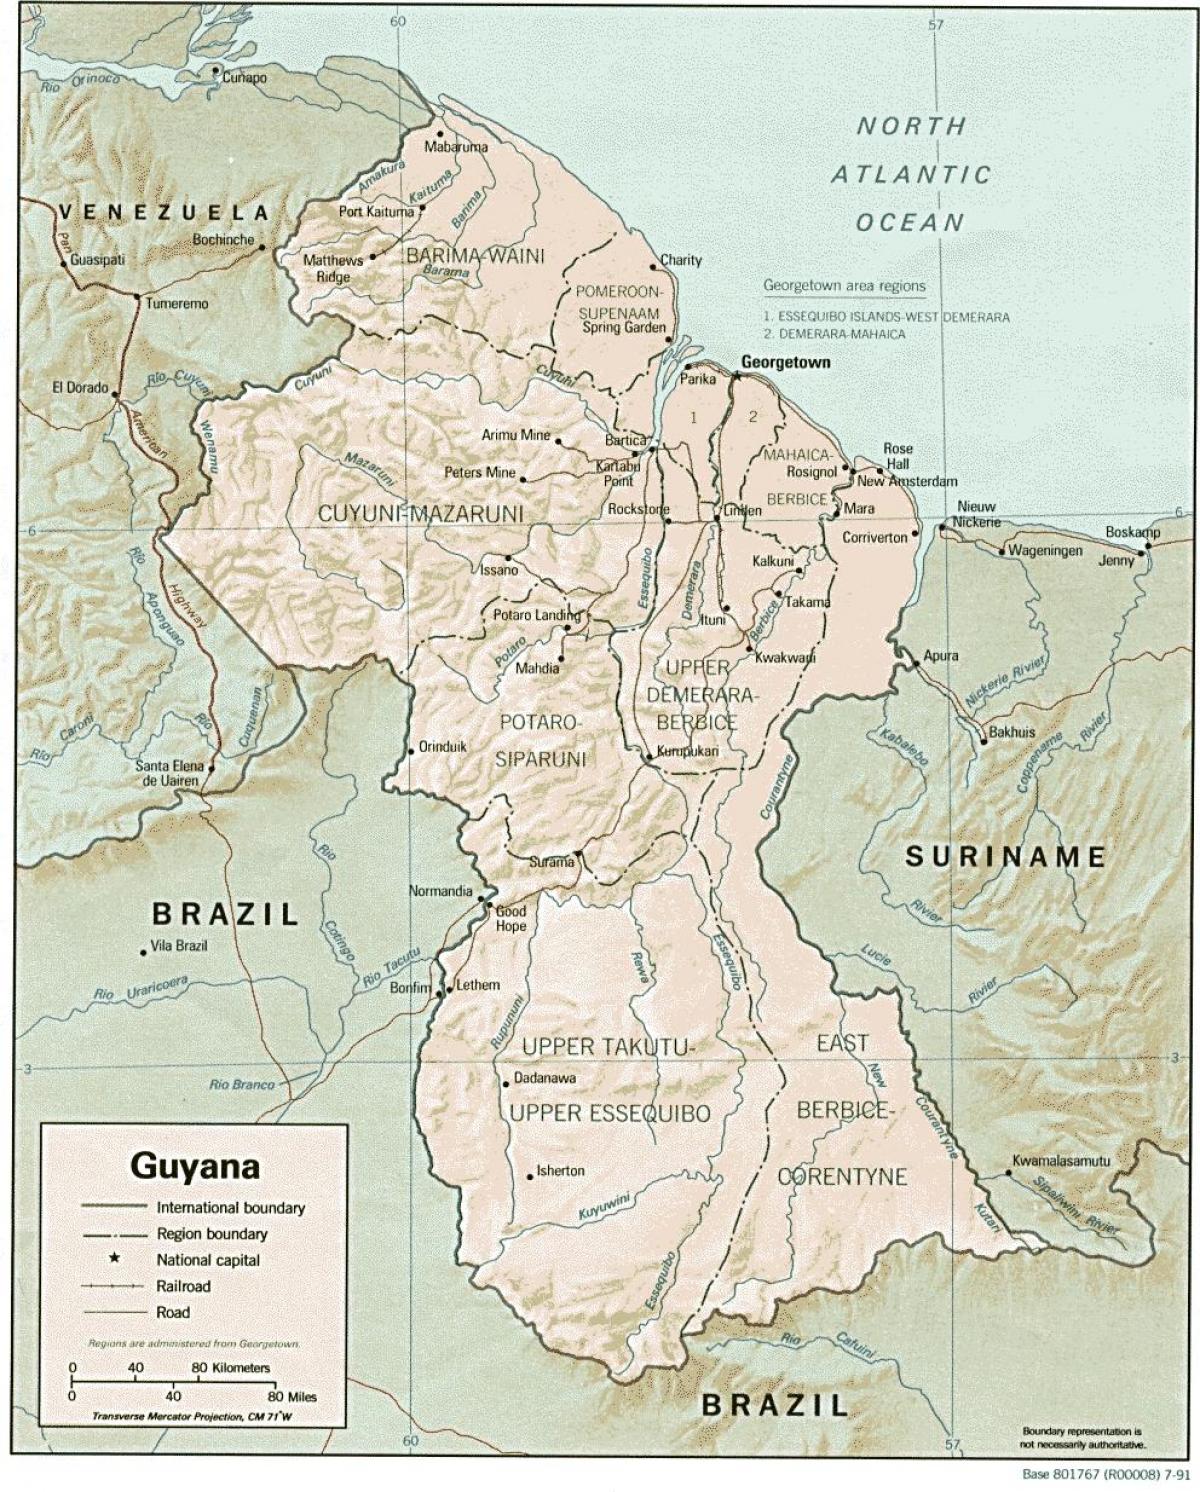 地图显示出美洲印第安人类住区在圭亚那